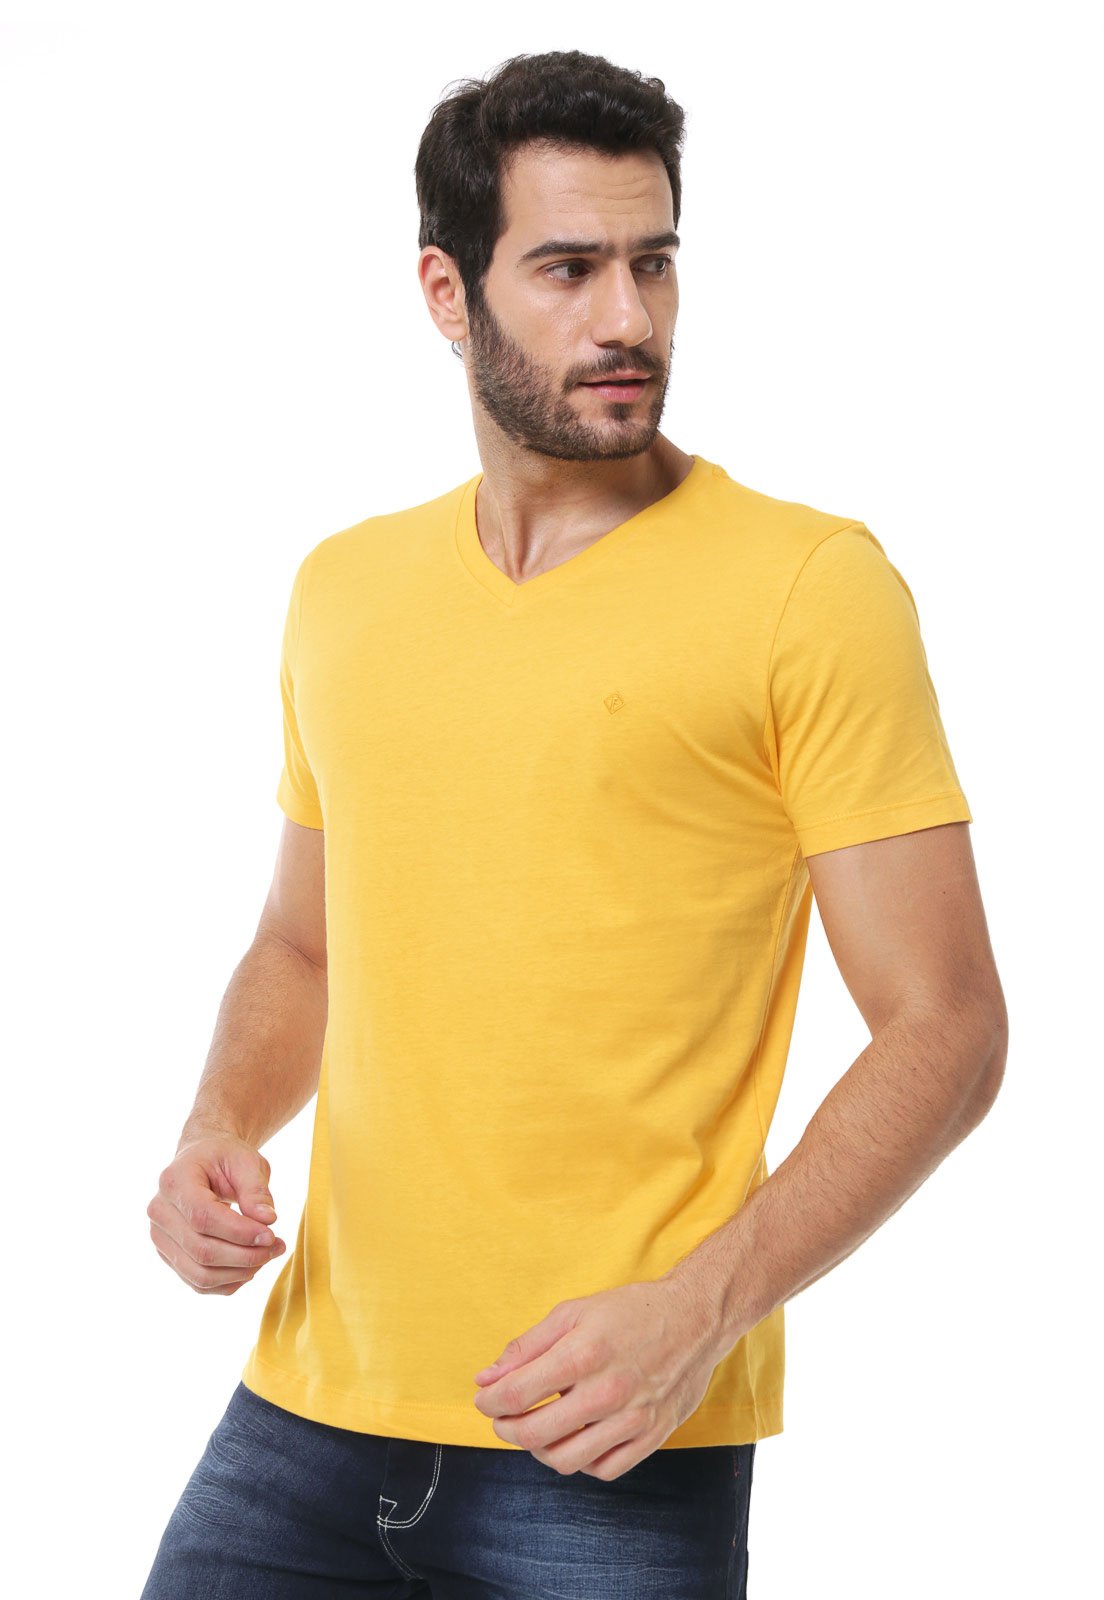 Camiseta Forum Gola V Amarela - Compre Agora Kanui Brasil